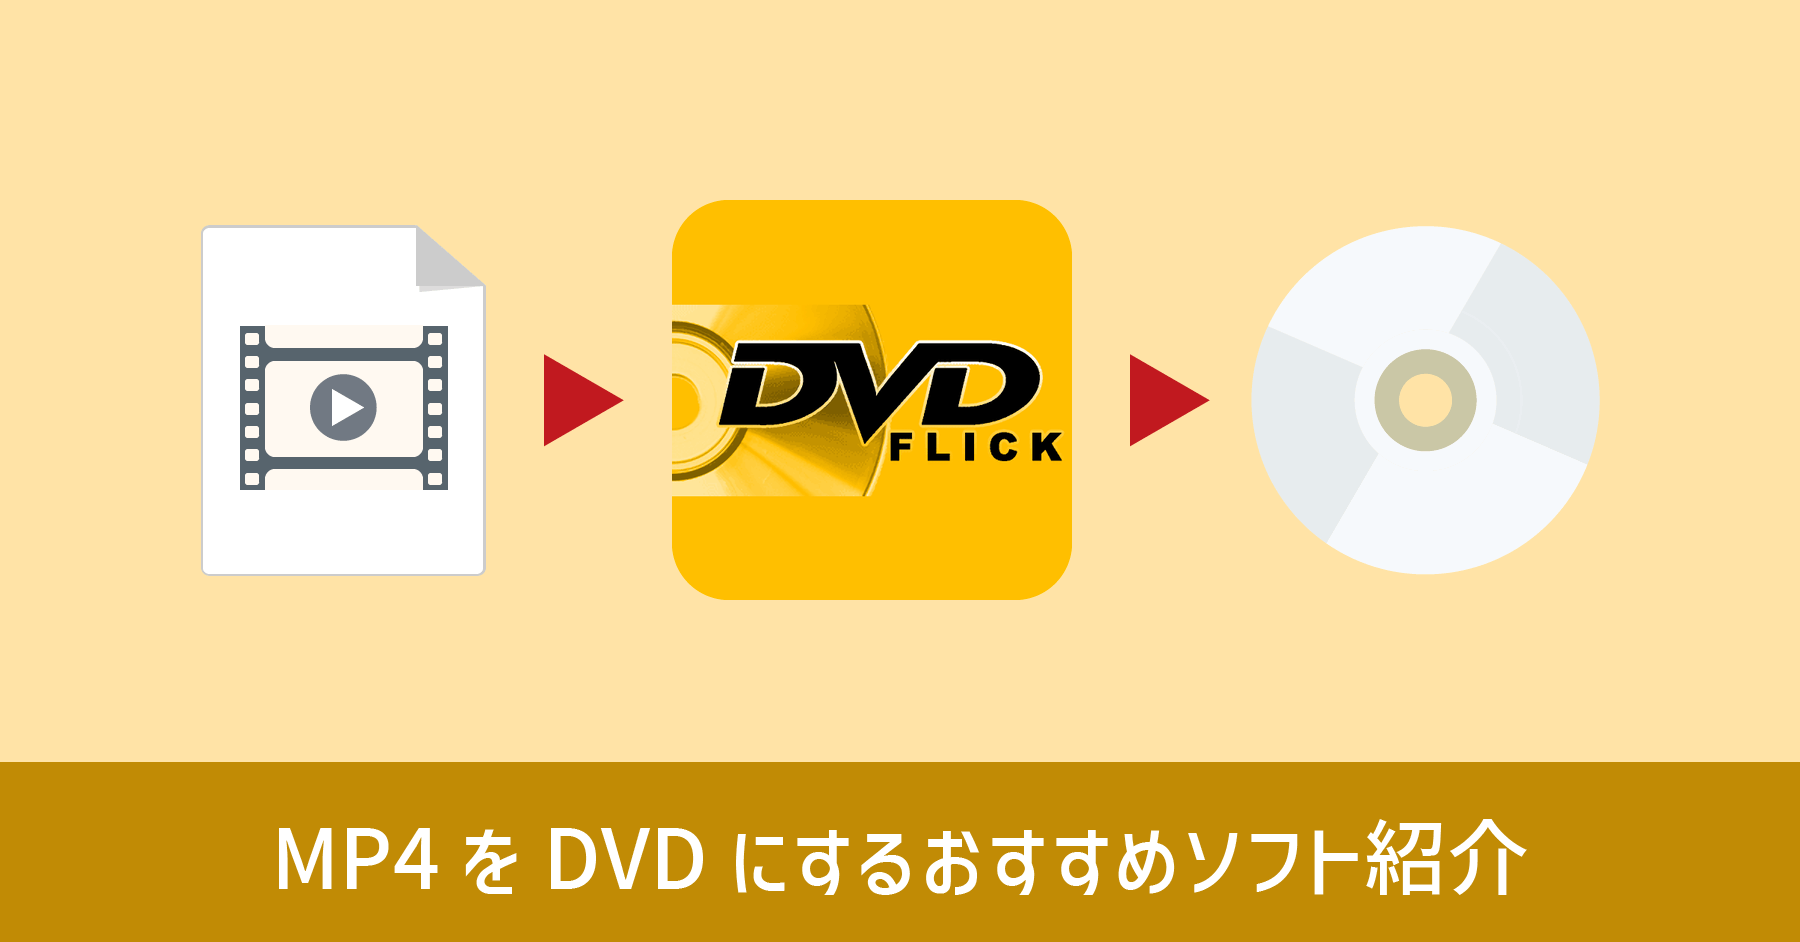 MP4 を DVD に書き込む おすすめフリーソフト DVD Flick の使い方を紹介